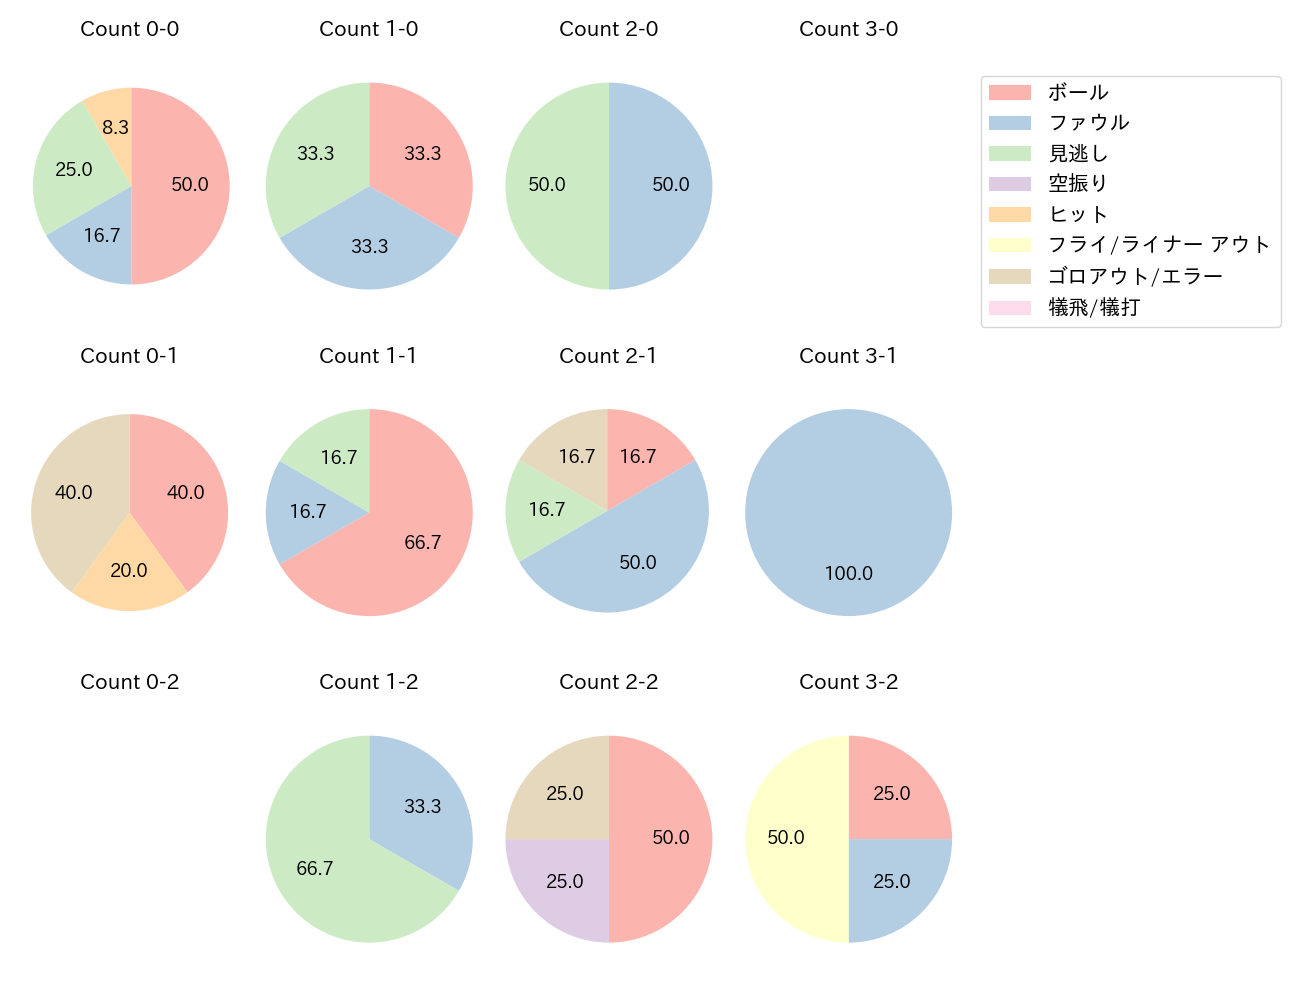 和田 康士朗の球数分布(2023年6月)